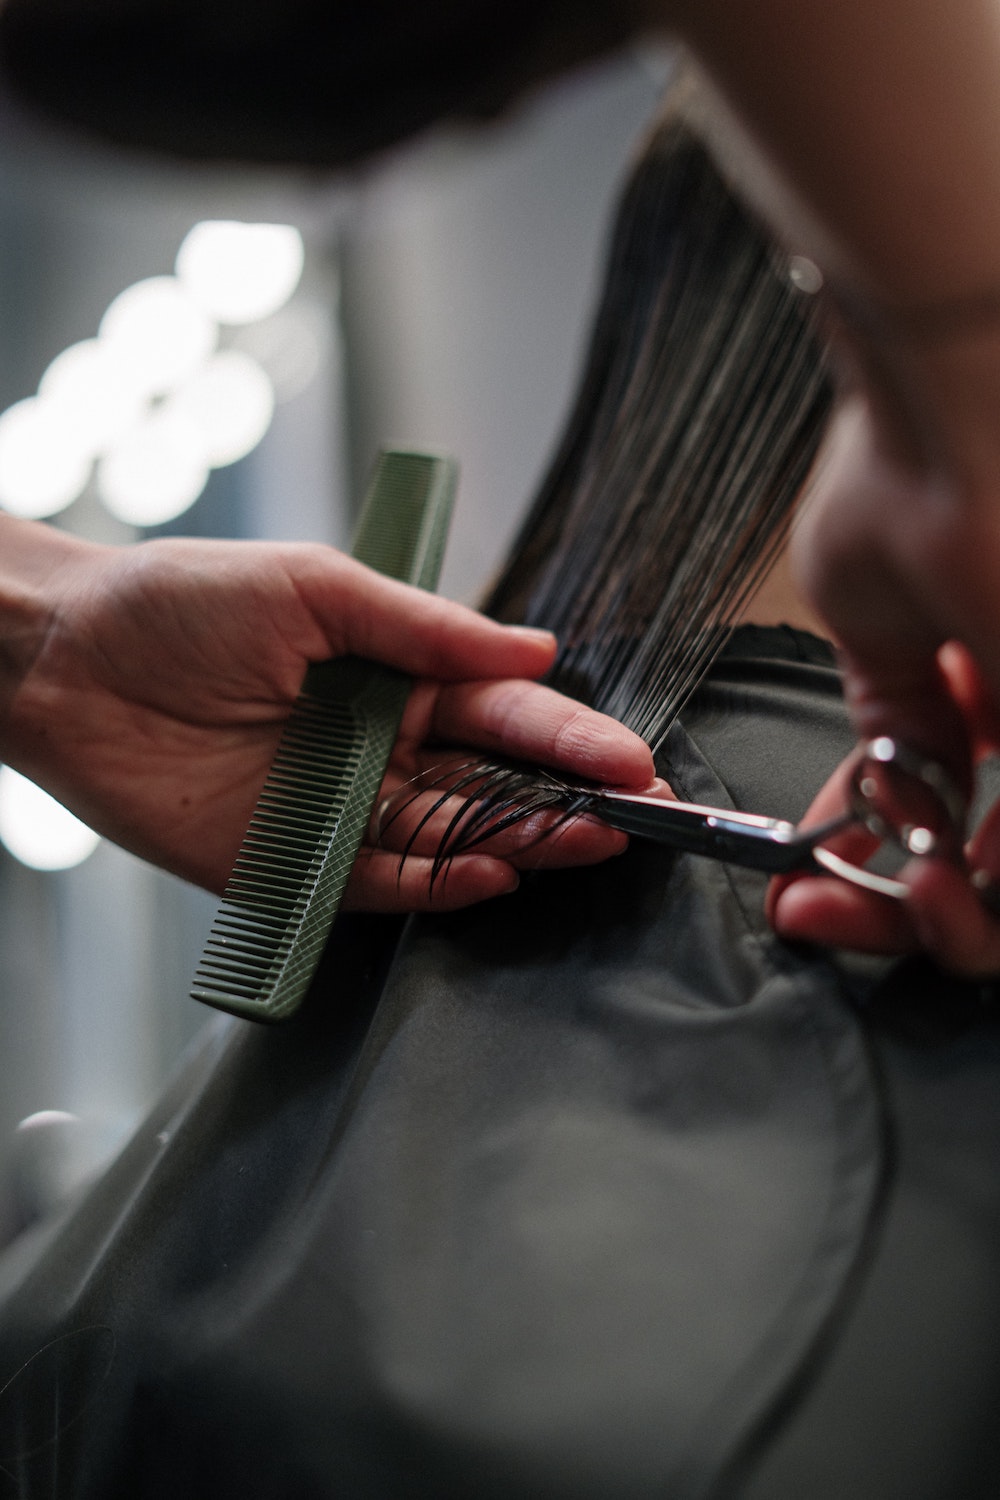 Des salons de coiffure offrent l'option «silence» pour éviter les discussions banales!